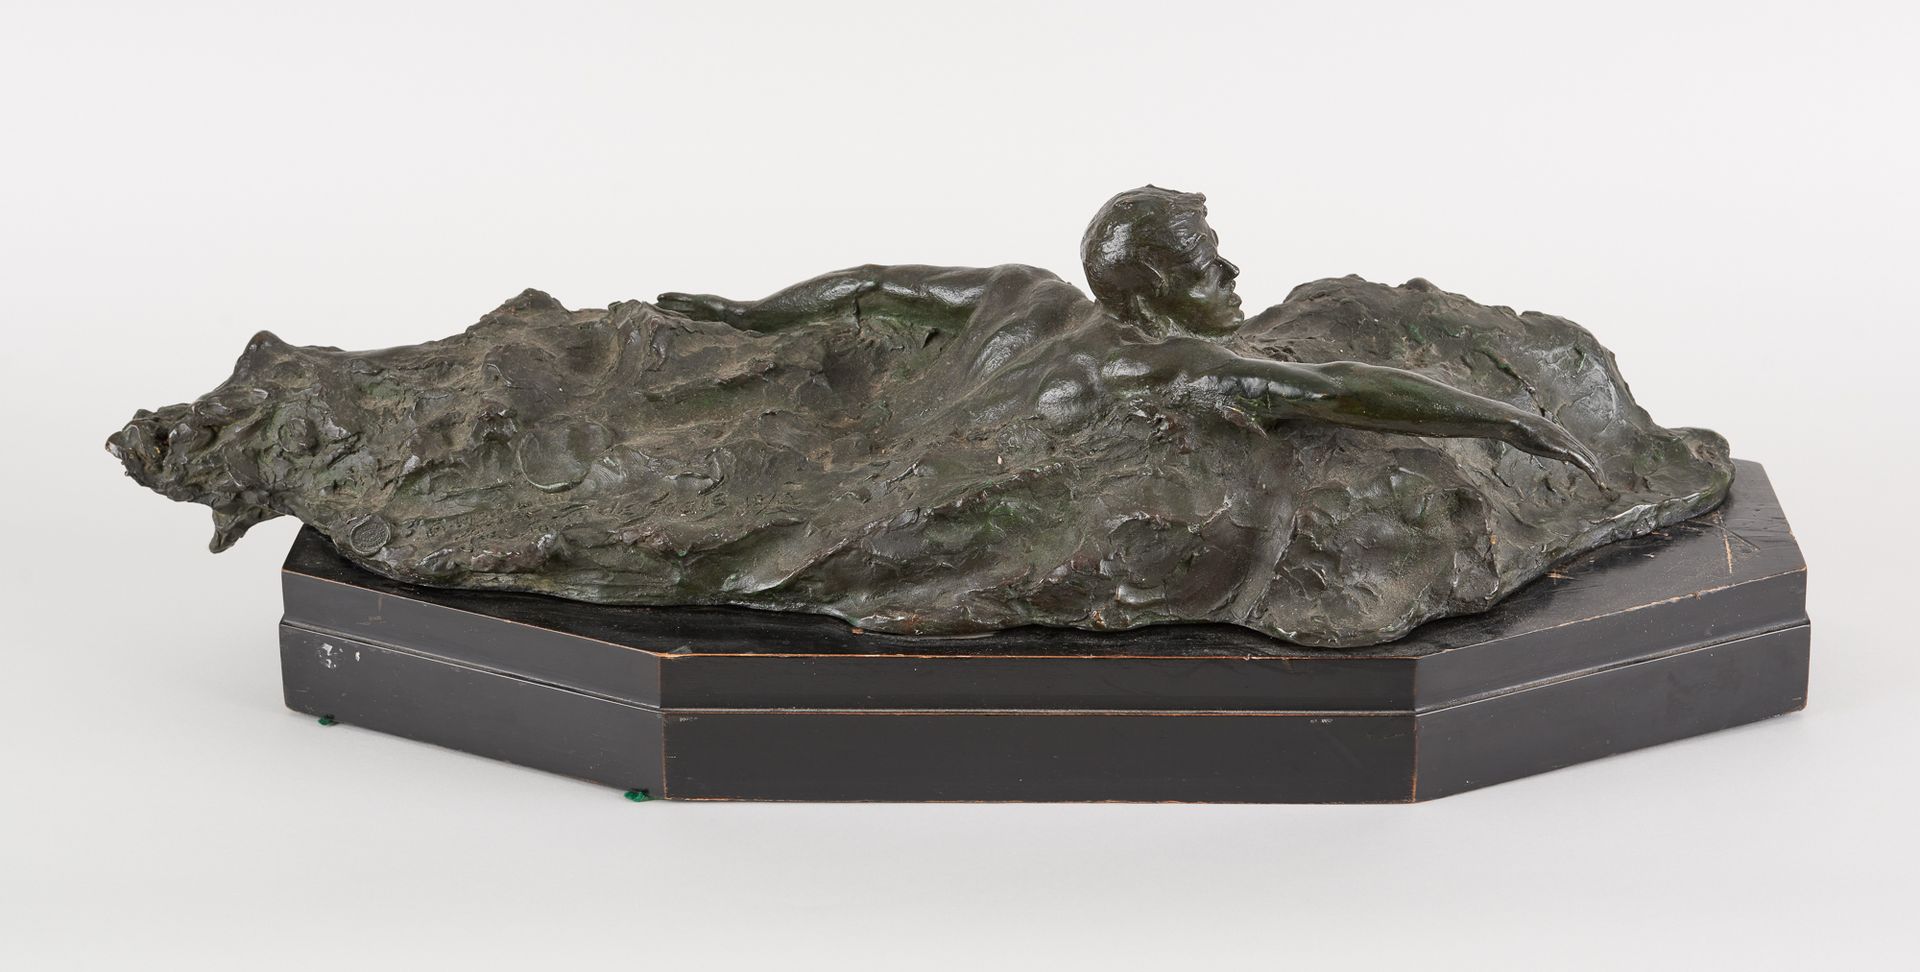 Pierre DE SOETE École belge (1886-1948) 绿色铜质雕塑：1920年安特卫普奥林匹克运动会的游泳运动员。

签名：P. De&hellip;